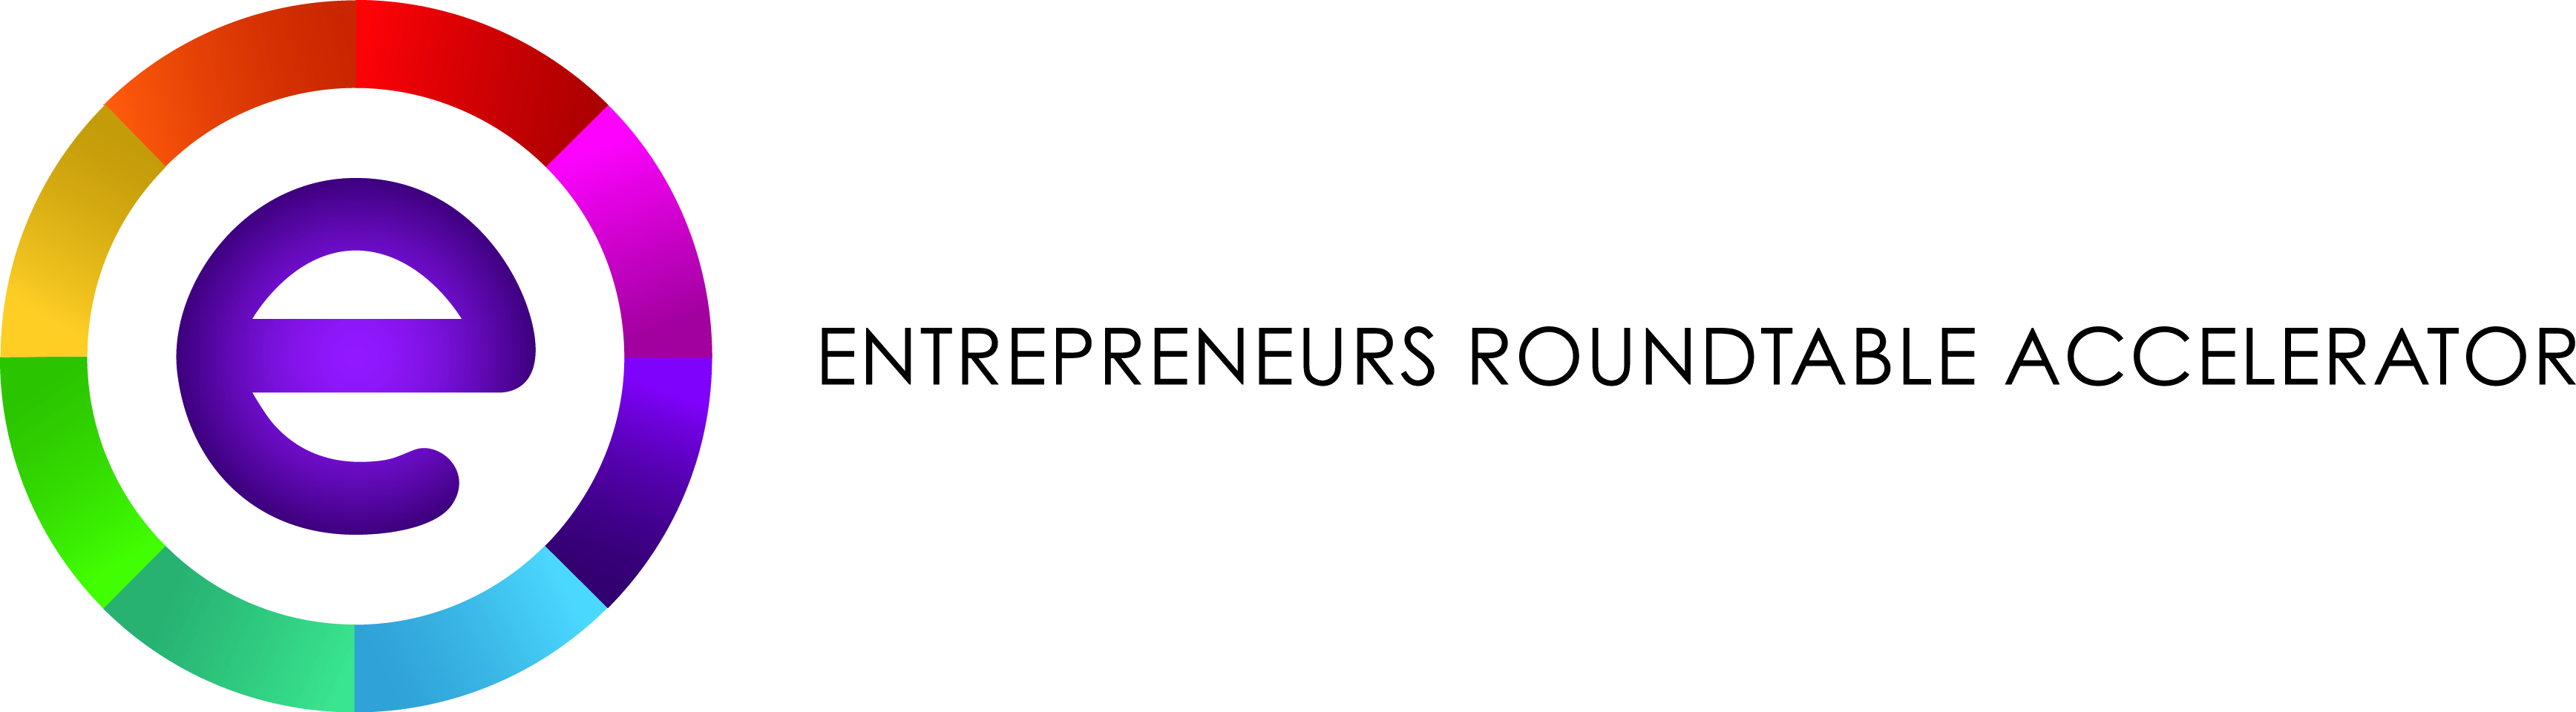 Entrepreneurs roundtable accelerator